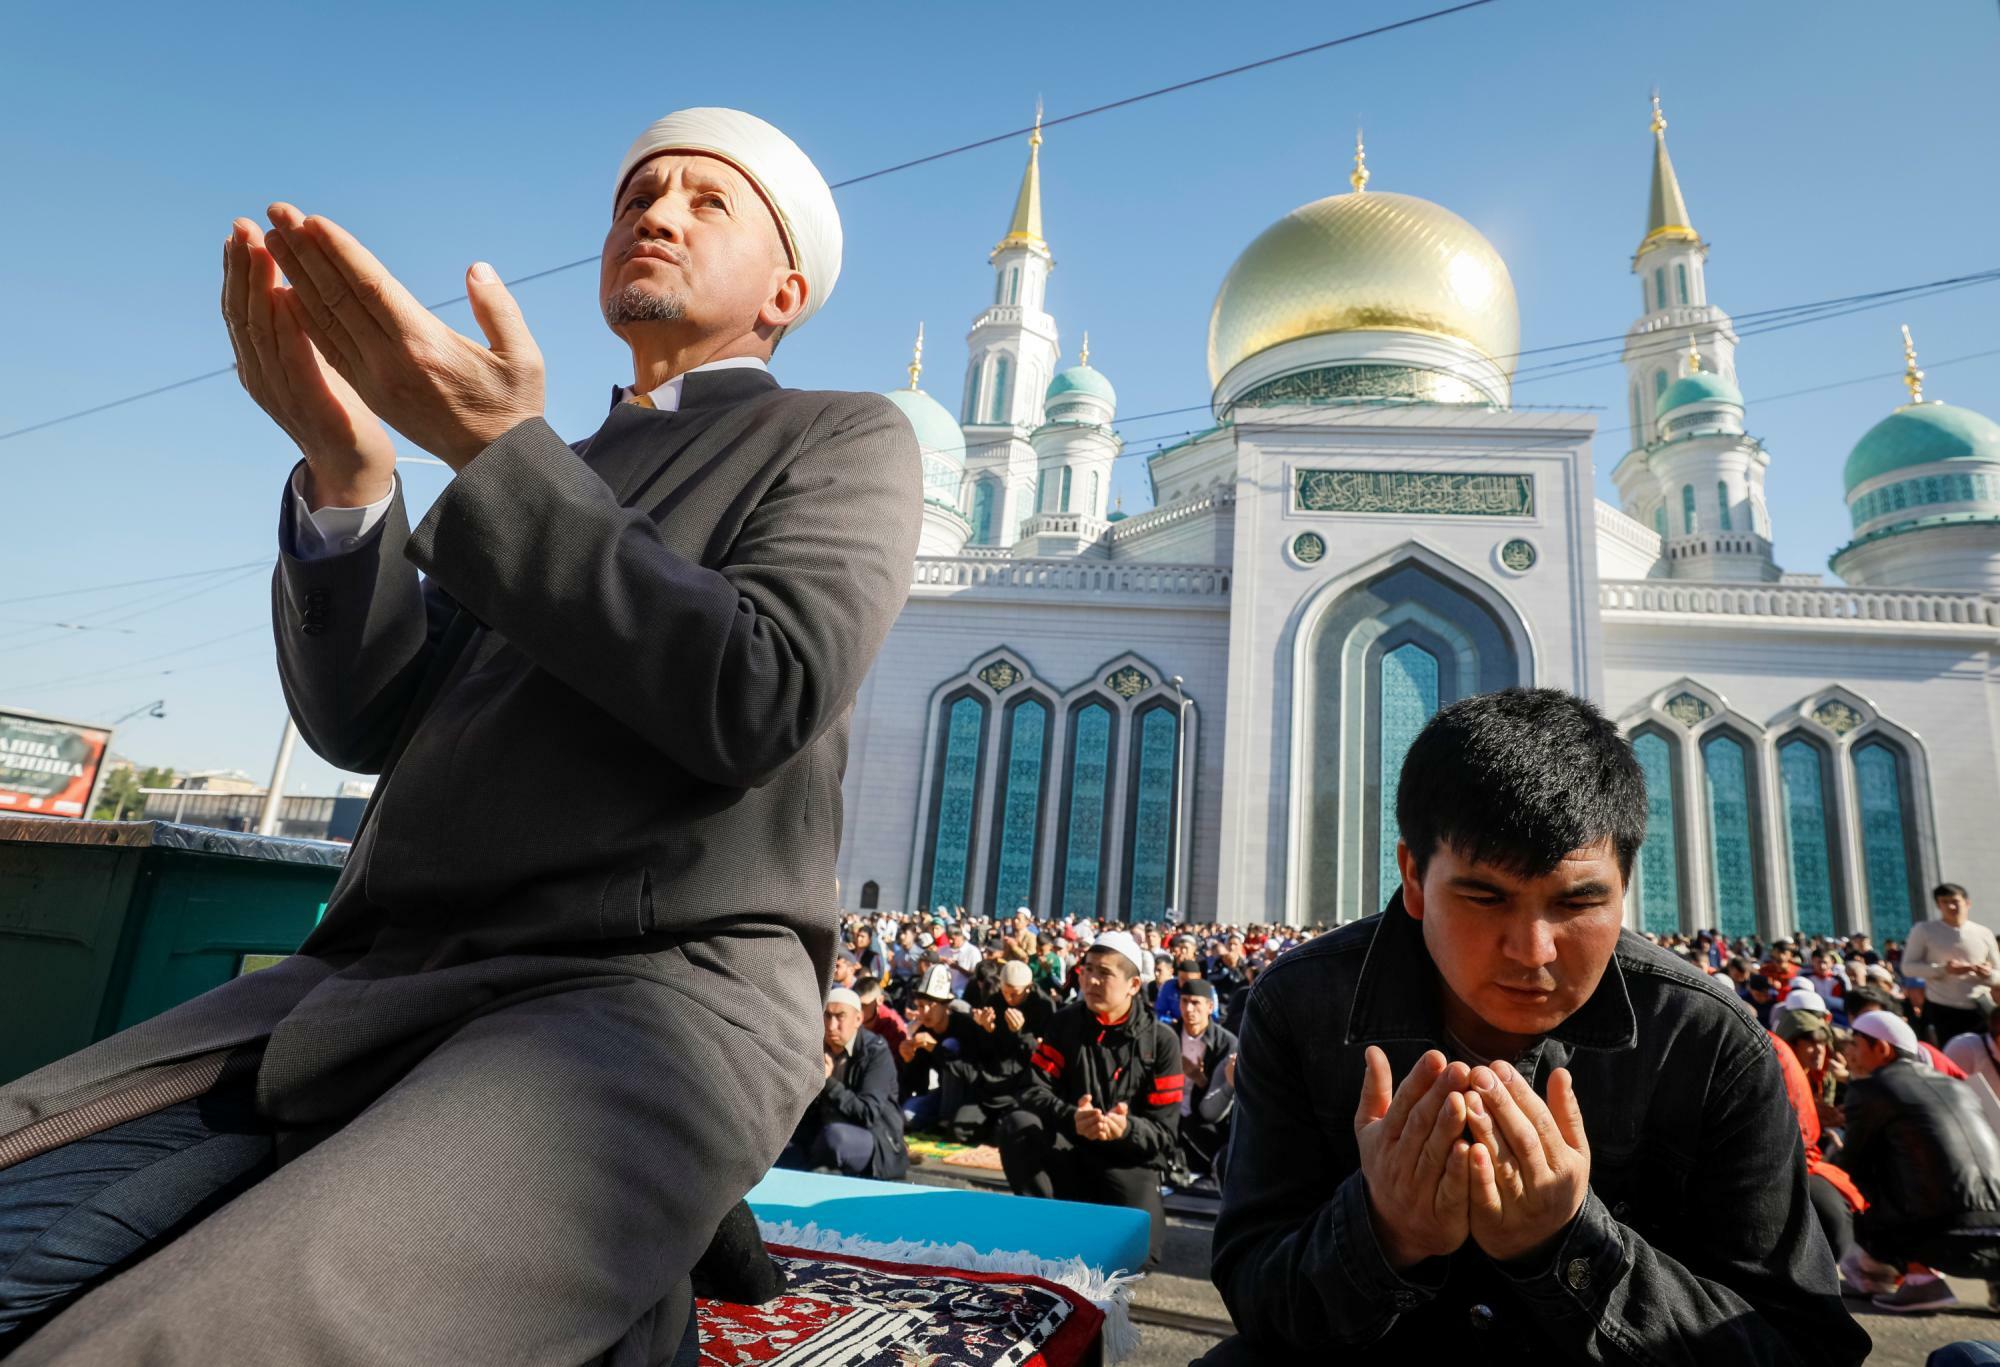 2019年6月4日、モスクワ大聖堂モスク近くで、聖なる月ラマダンの終わりを告げるイード・アル・フィトルの朝の祈りに参加するイスラム教徒達。礼拝所は大きなモスクとは限らず、建物の一室であることもある。